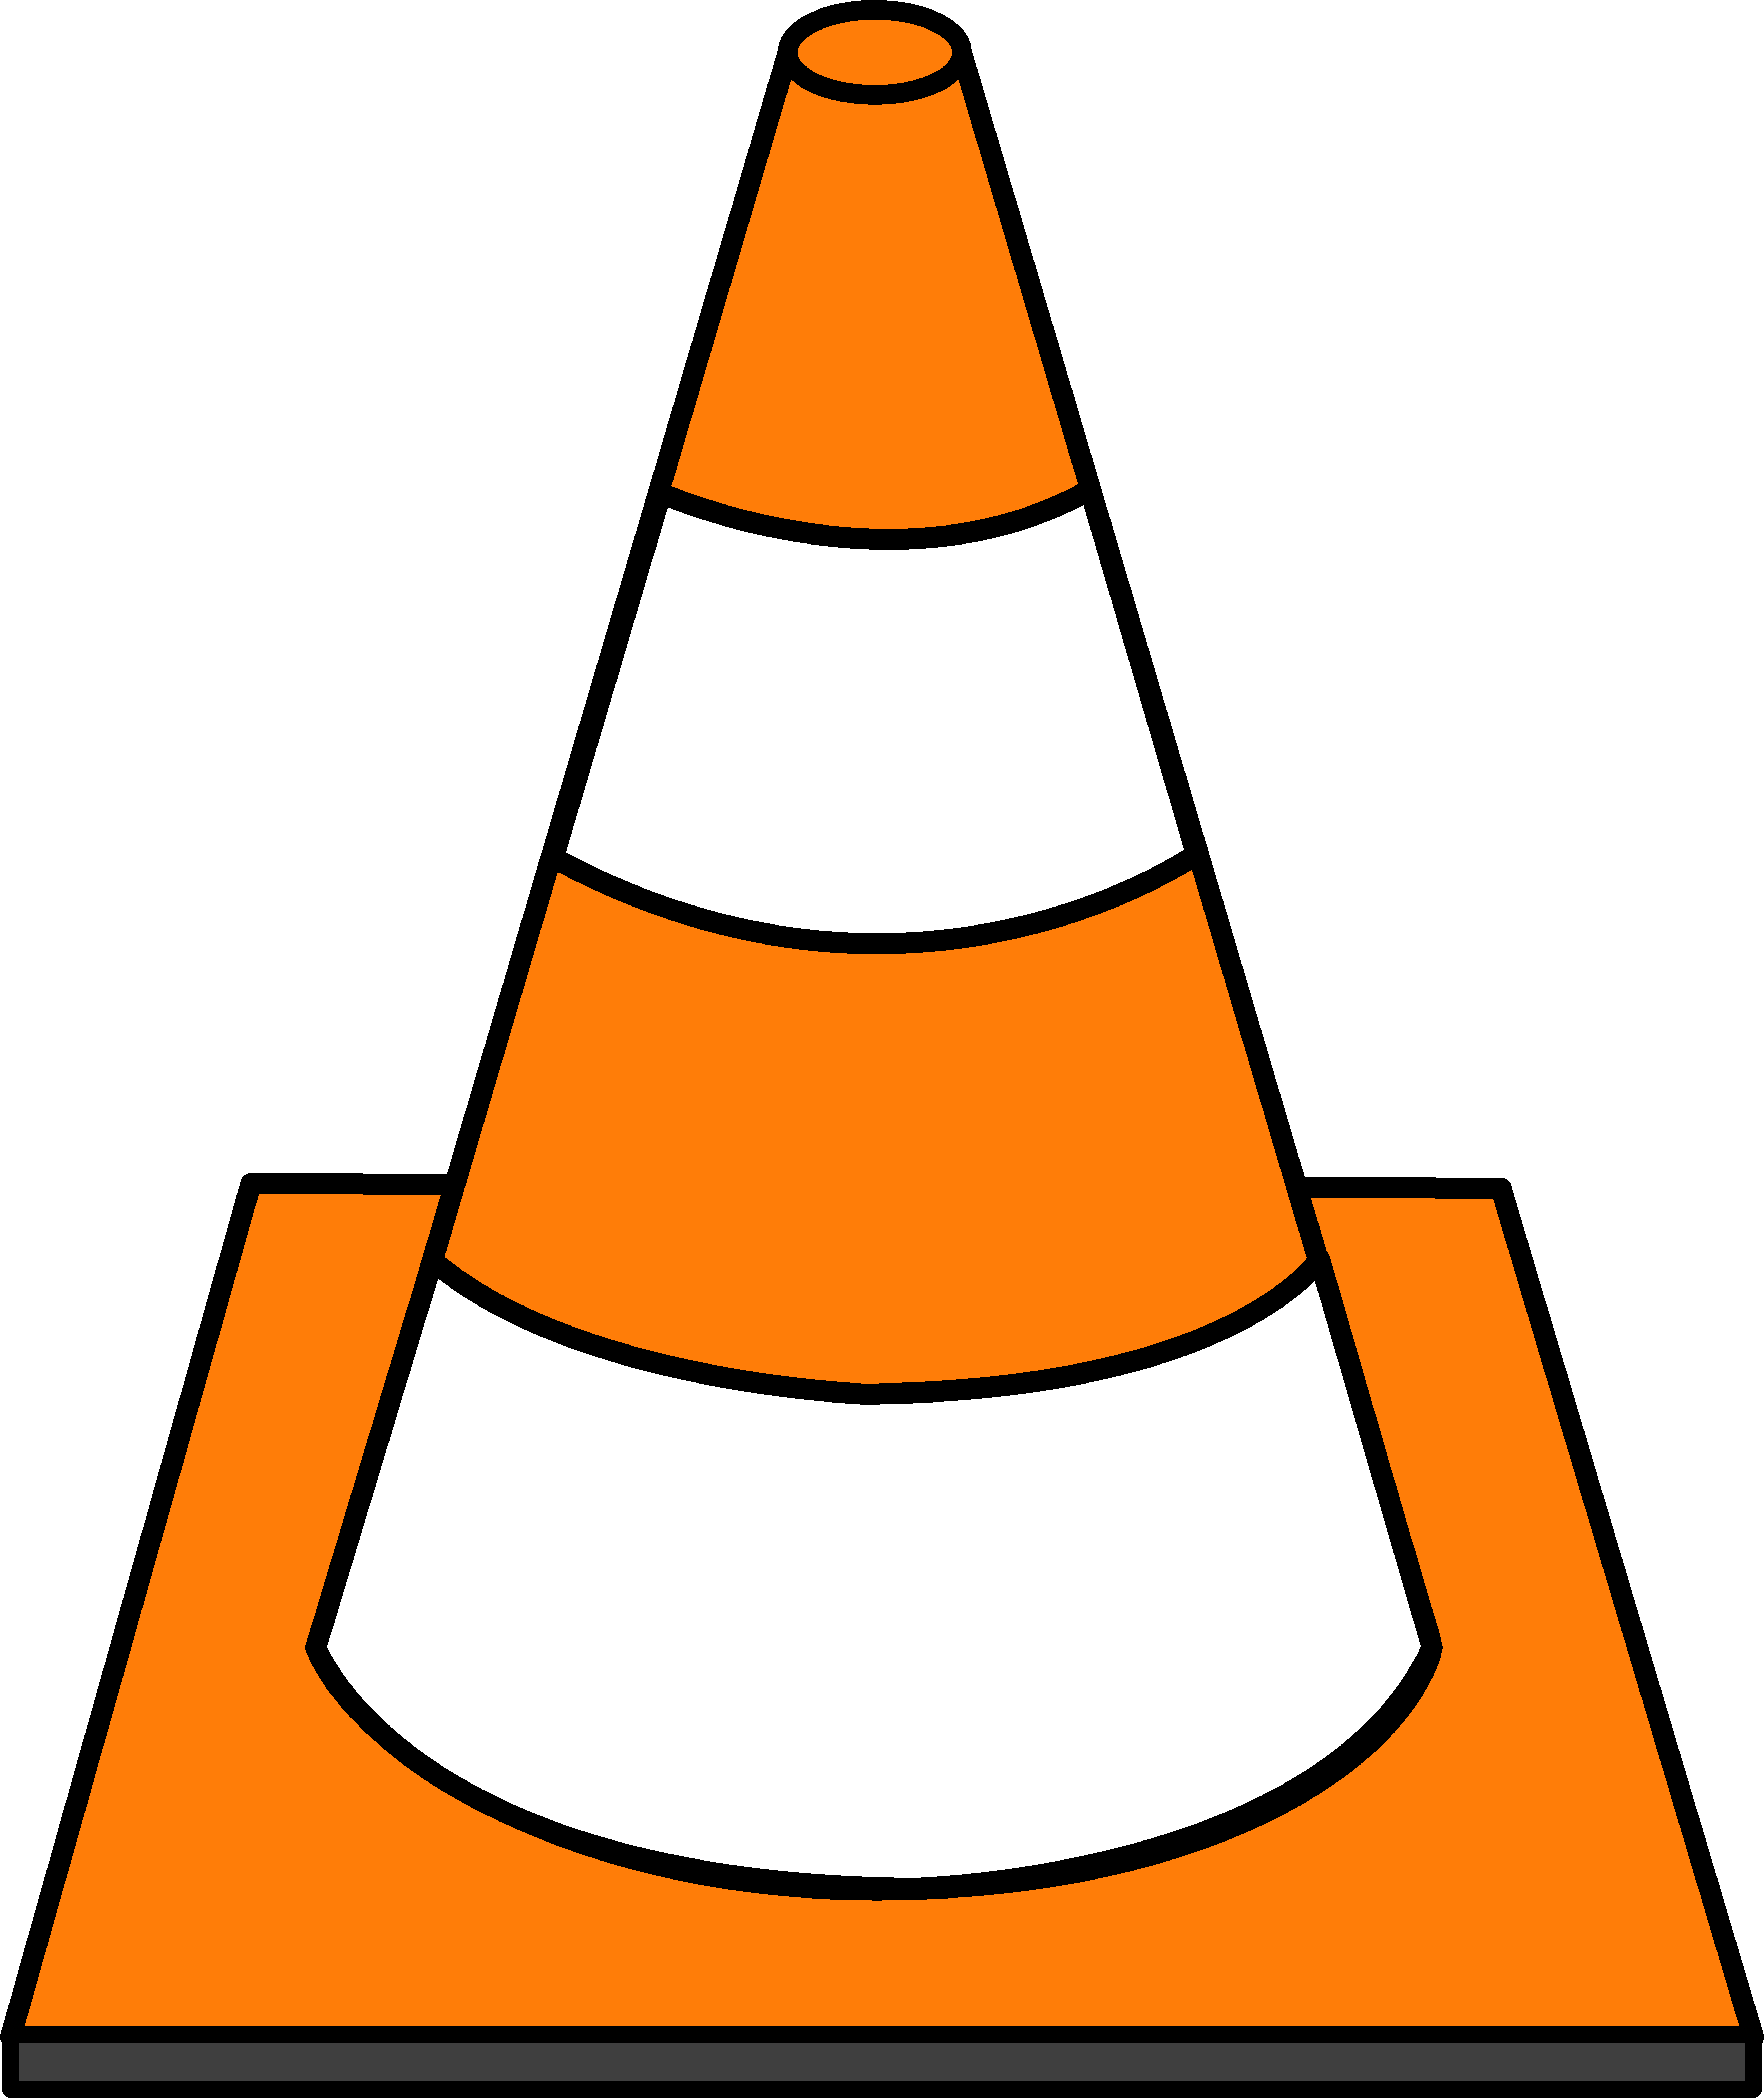 Cone cliparts - Cone Clipart